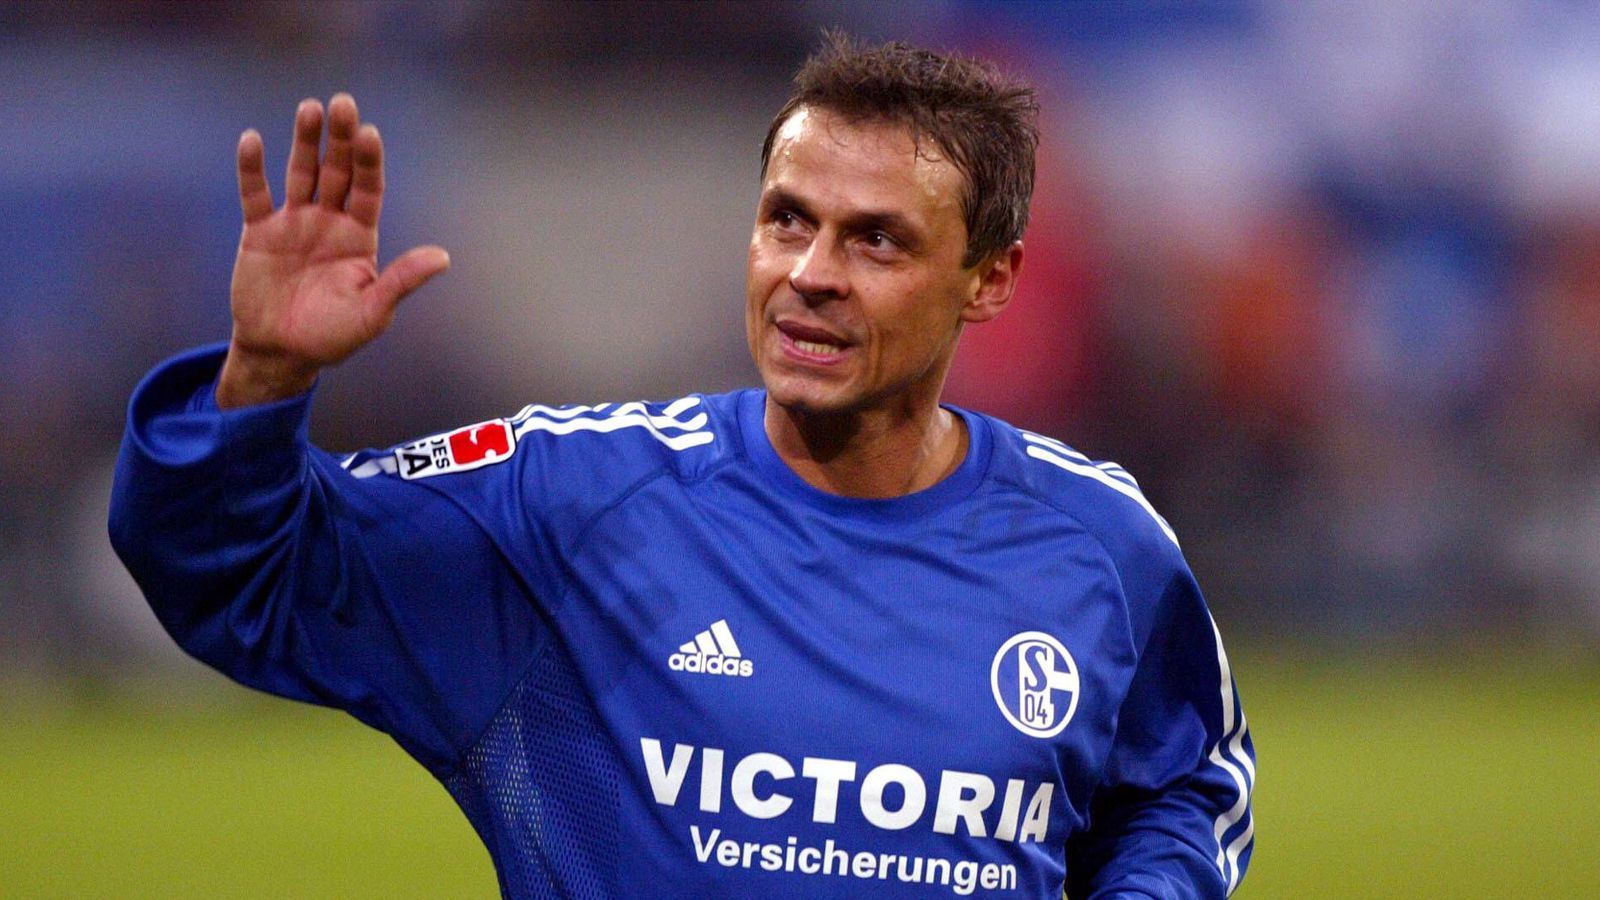 
                <strong>Olaf Thon</strong><br>
                Die Schalker Ikone Olaf Thon wurde ebenfalls in Gelsenkirchen geboren und spielte als Profi für die Knappen und die Bayern. 1988 holten sich die Münchner den damals 22 Jahre alten Thon von Schalke. Mit den Bayern wurde er drei Mal Meister und gewann mit Deutschland 1990 den WM-Titel. 1994 kehrte Thon zurück auf Schalke - und gewann mit den Knappen drei Jahre später den Uefa-Cup. 2002 beendete Thon seine Karriere nach 444 Bundesliga-Spielen für Schalke und die Bayern.
              